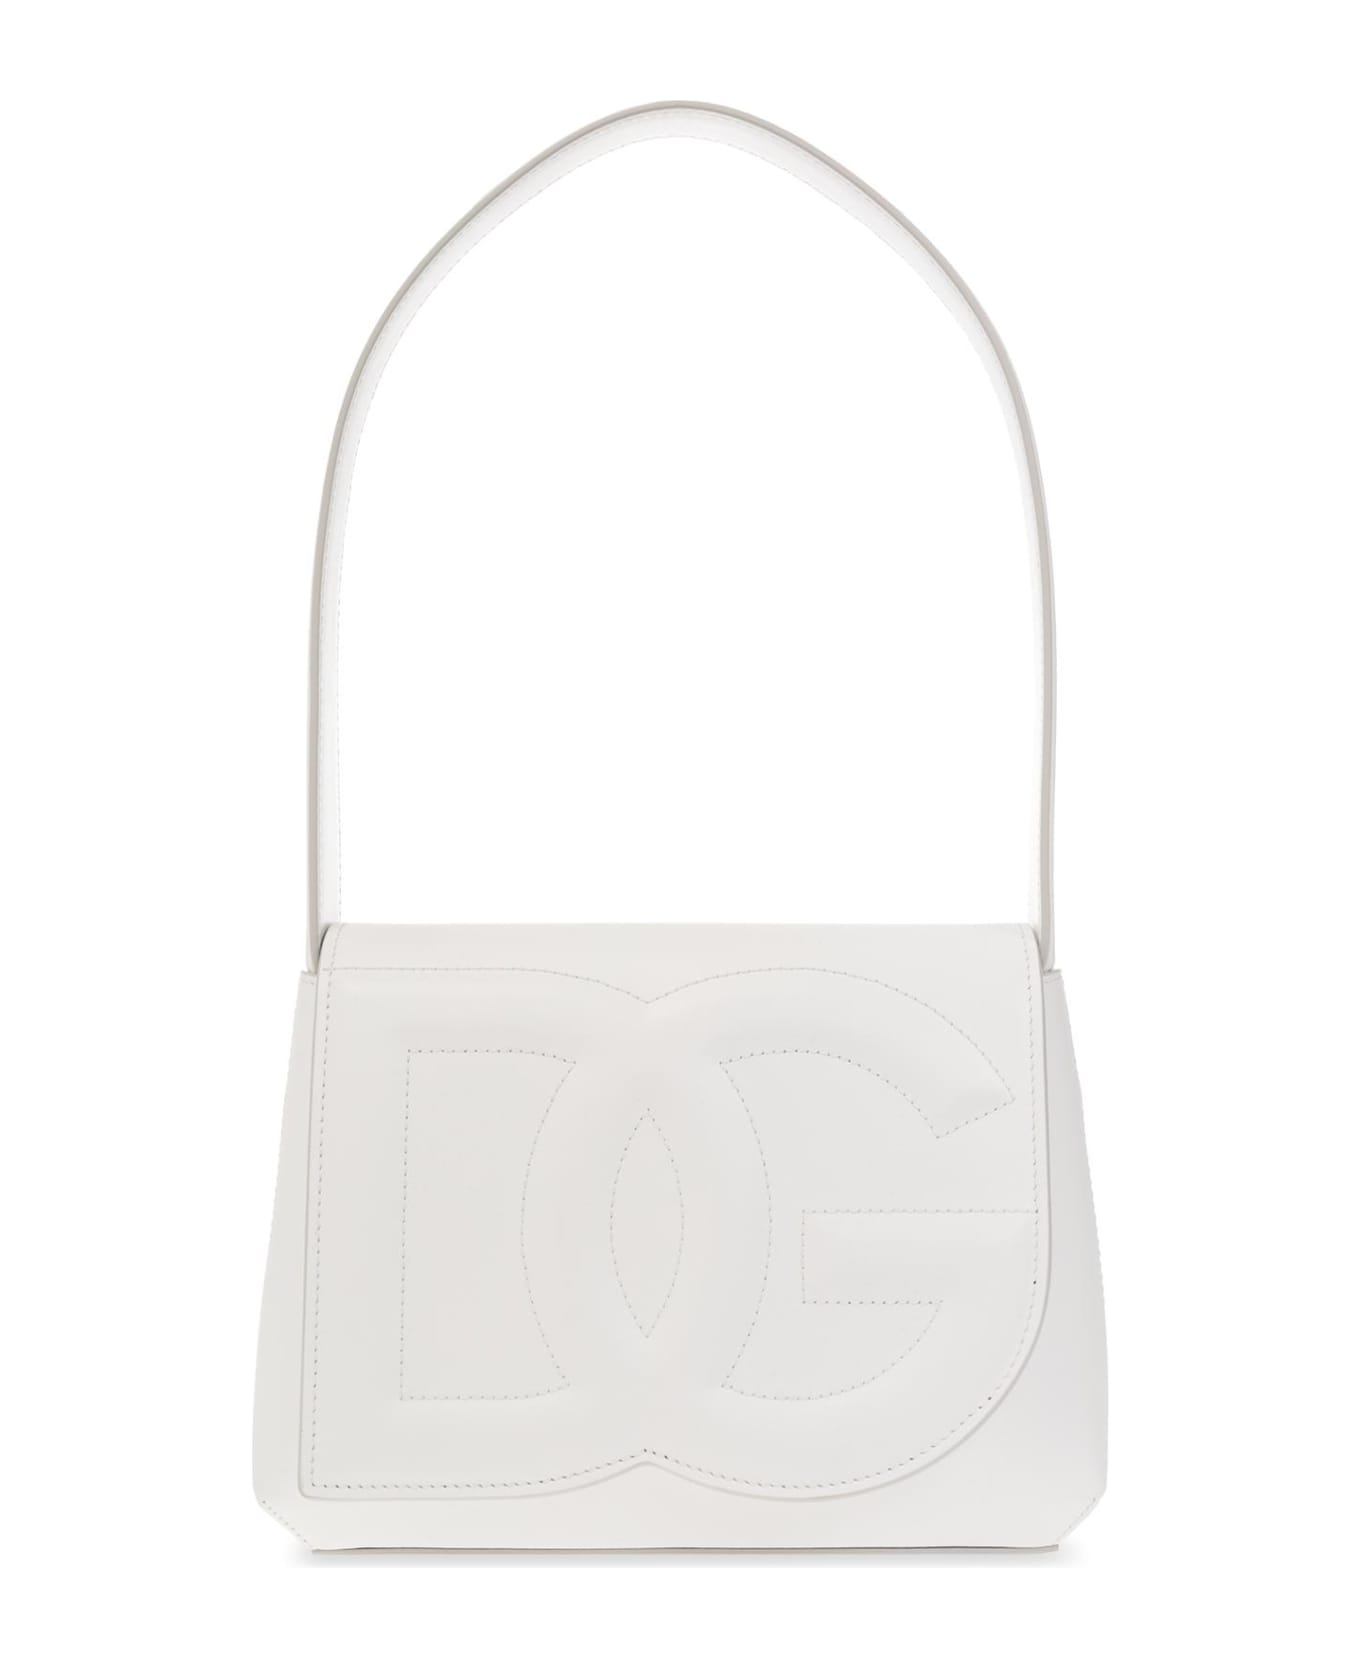 Dolce & Gabbana 'dg' Shoulder Bag - White